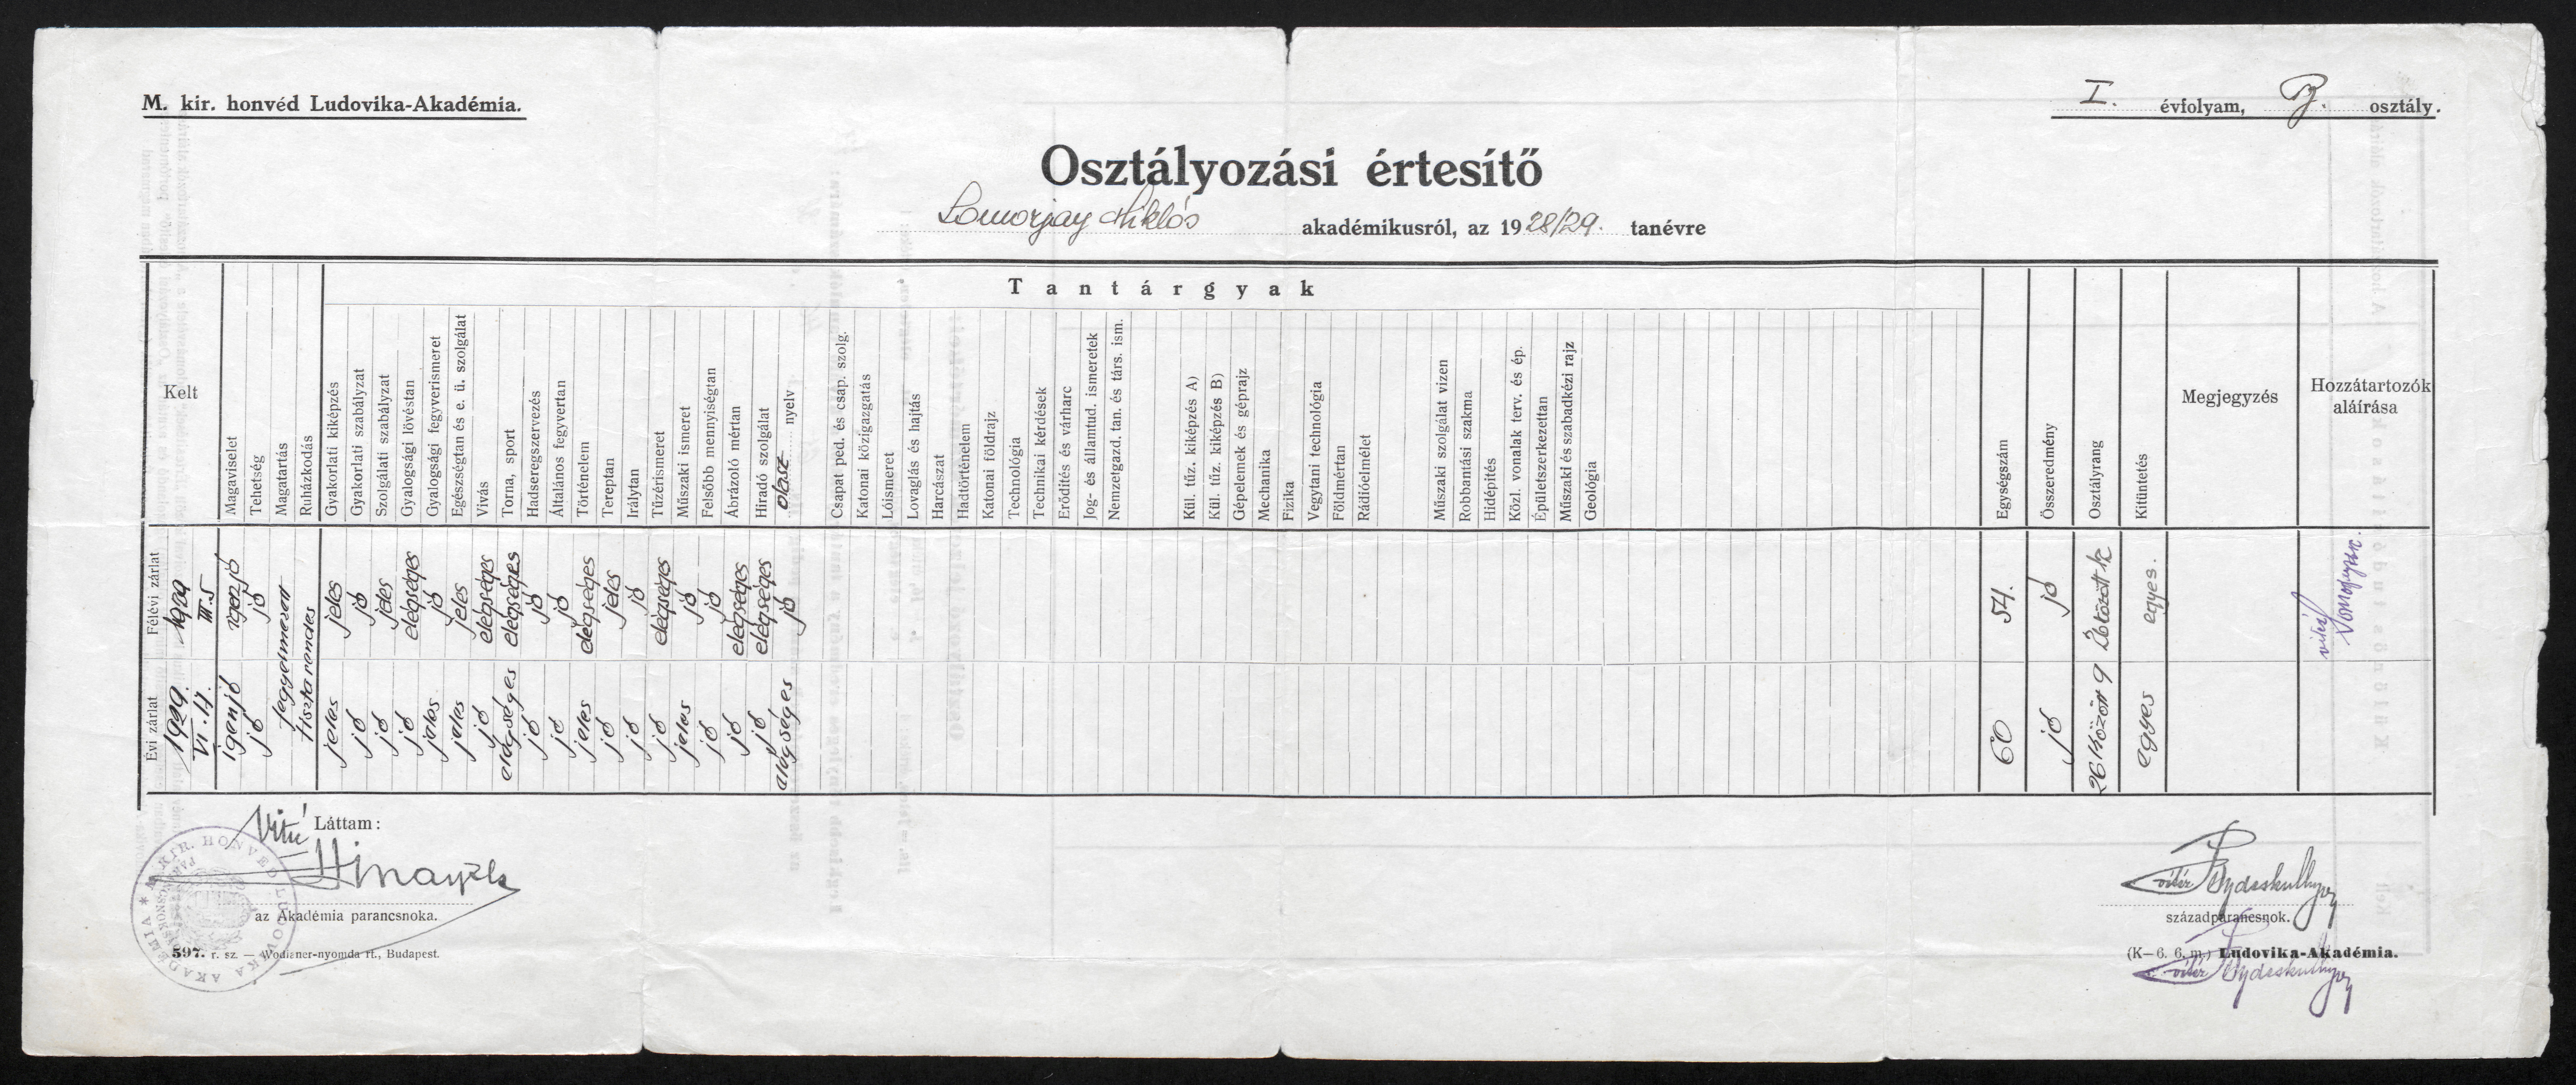 Osztályozási értesító Somorjay Miklós akadémikusról, az 1928/29. tanévre